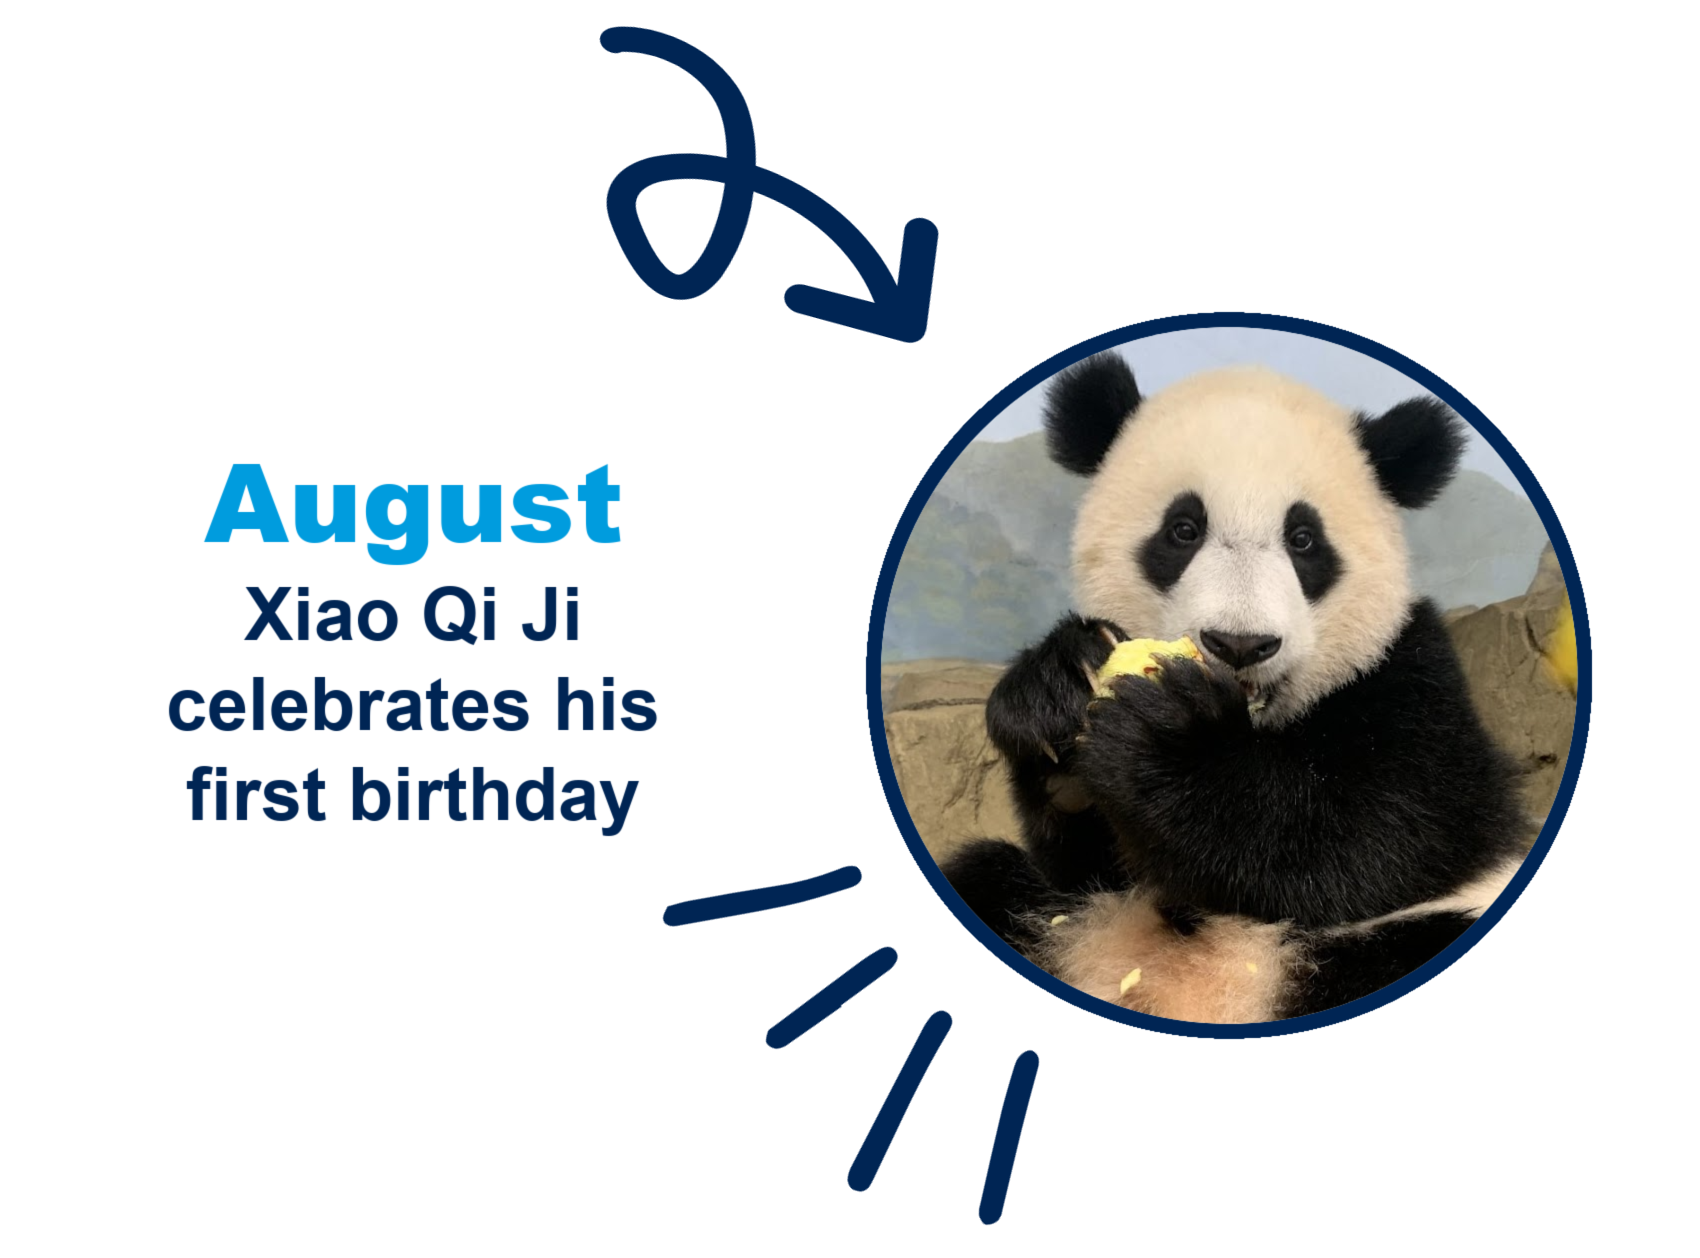 Giant panda Xiao Qi Ji celebrates first birthday